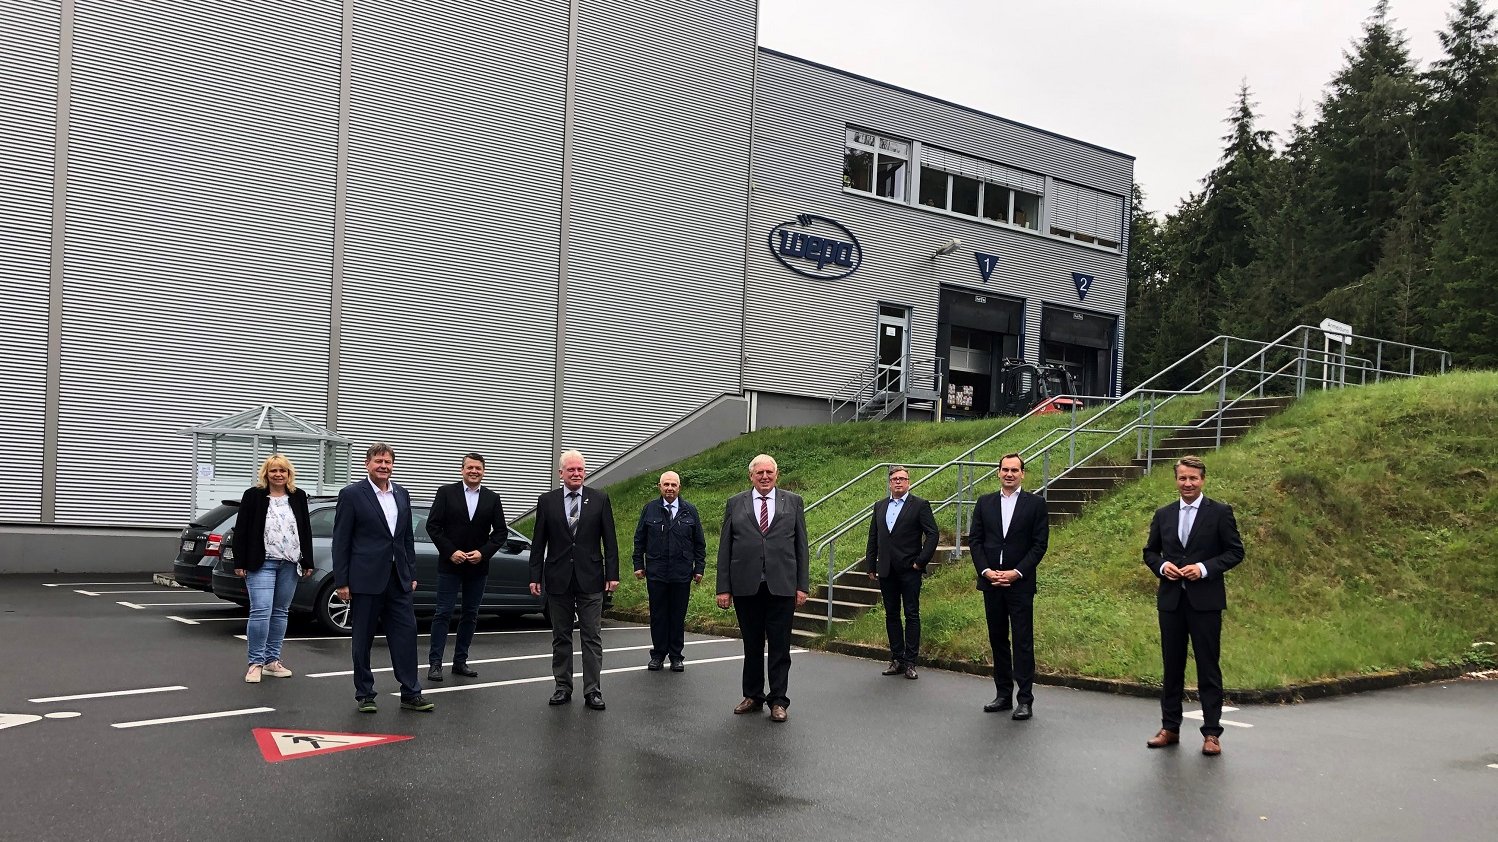 CDU politicians visit plant in Giershagen